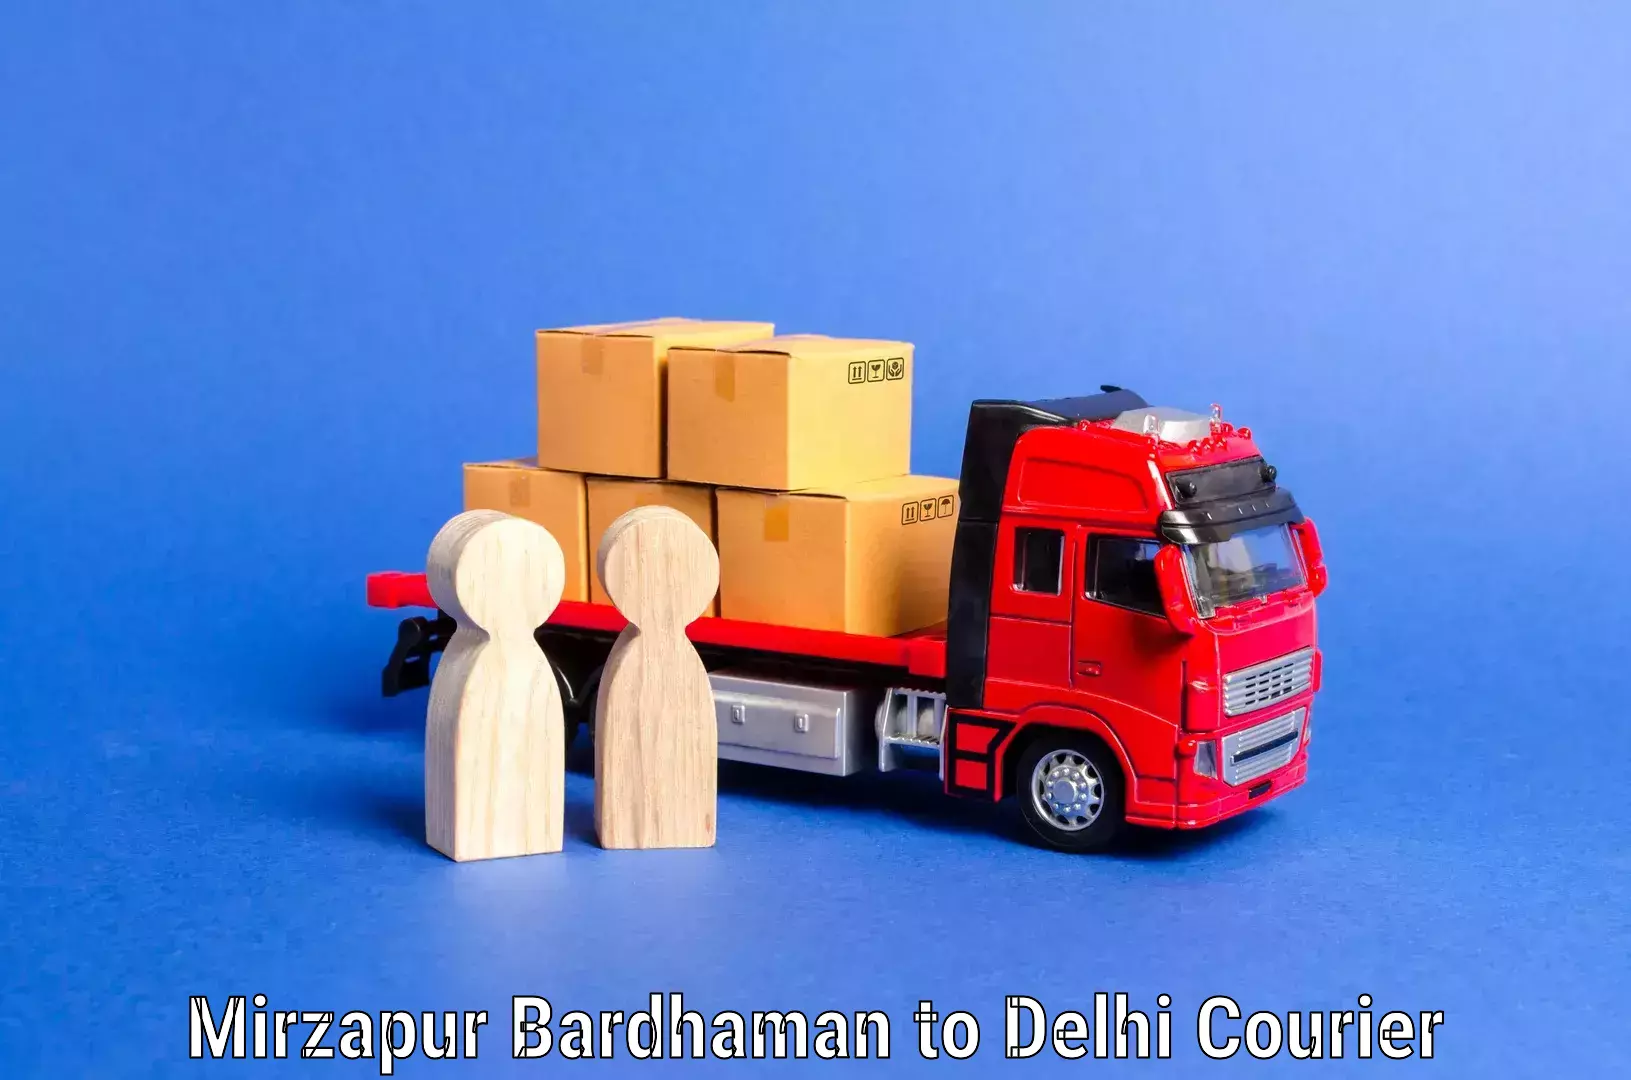 Home shifting experts Mirzapur Bardhaman to Delhi